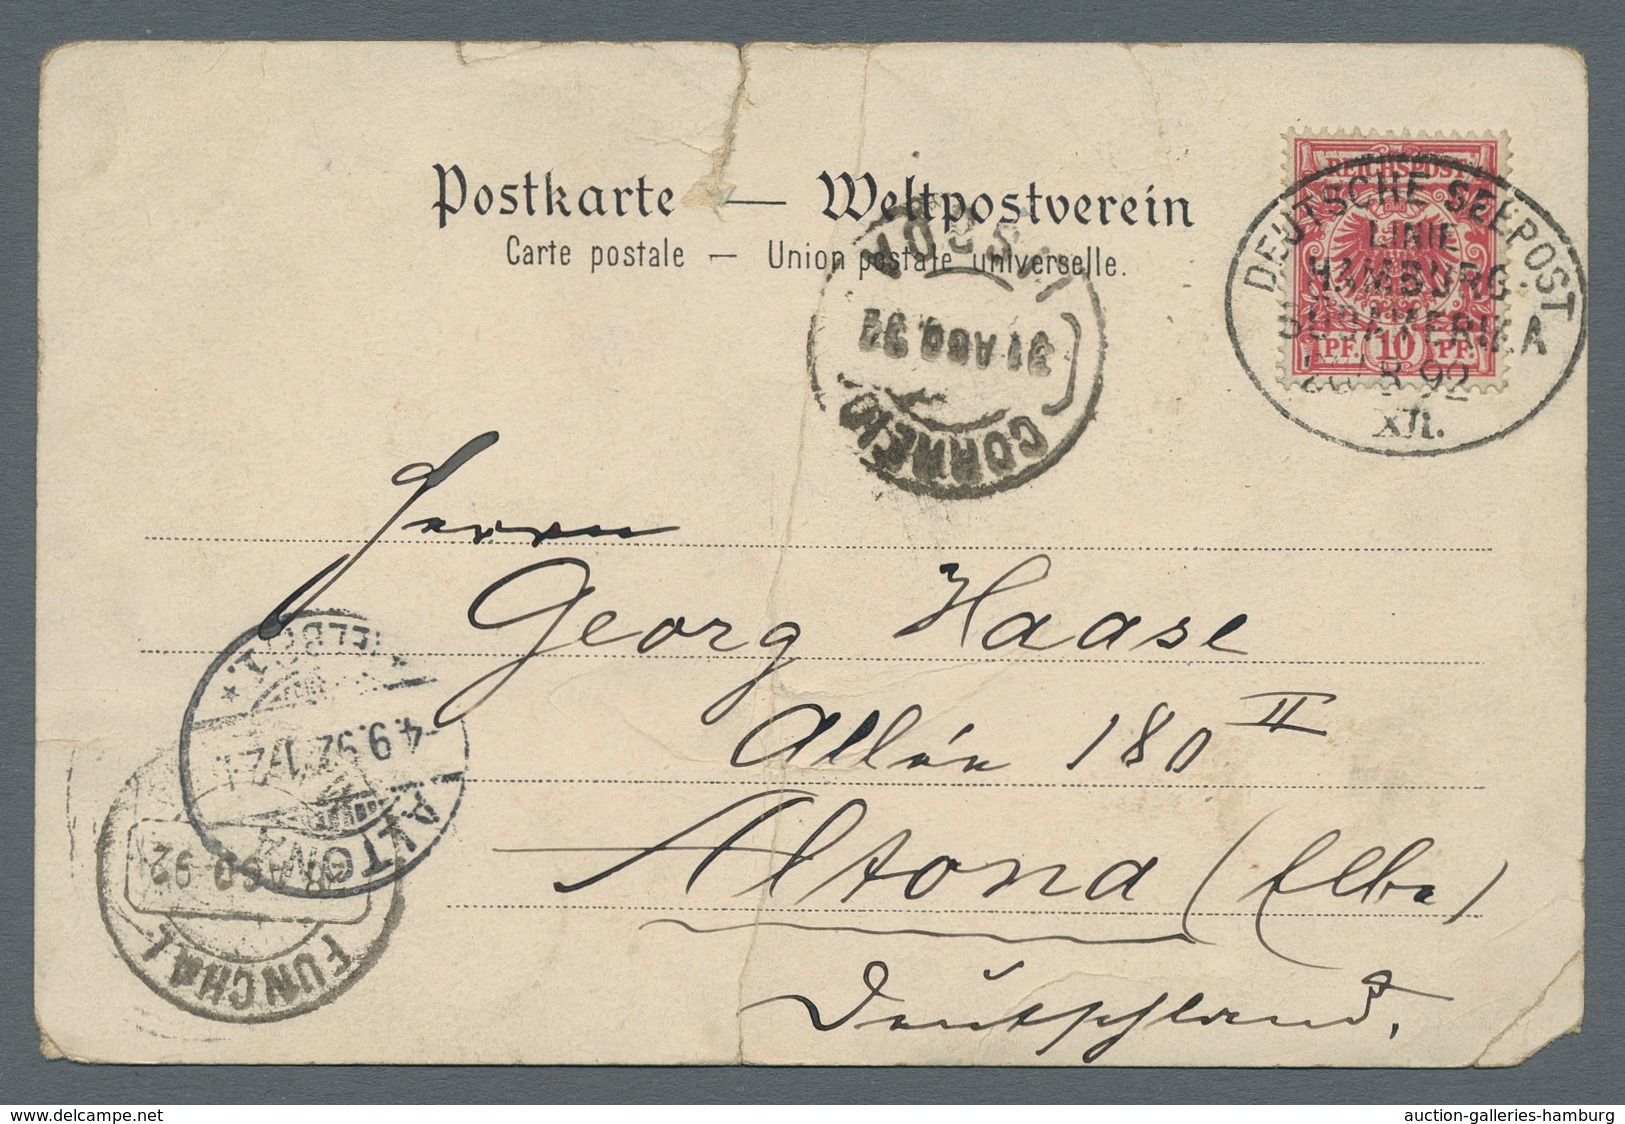 Schiffspost Deutschland: 1892-1905, Partie von 13 frankierten Ansichtskarten welche alle deutsche Se